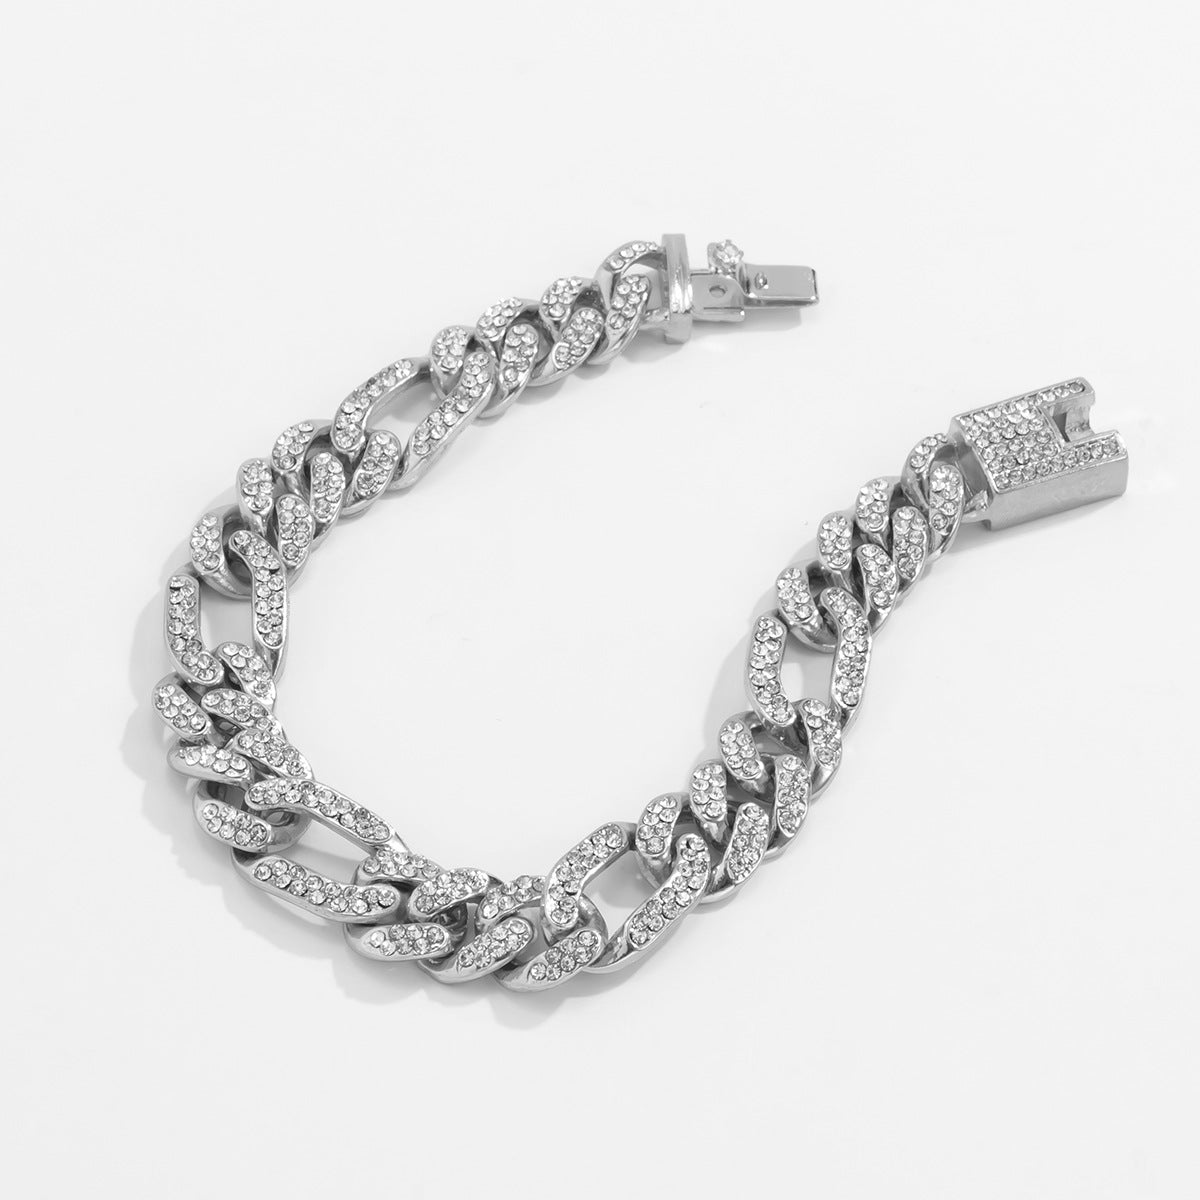 Fashion hip hop design bracelet - Syble's